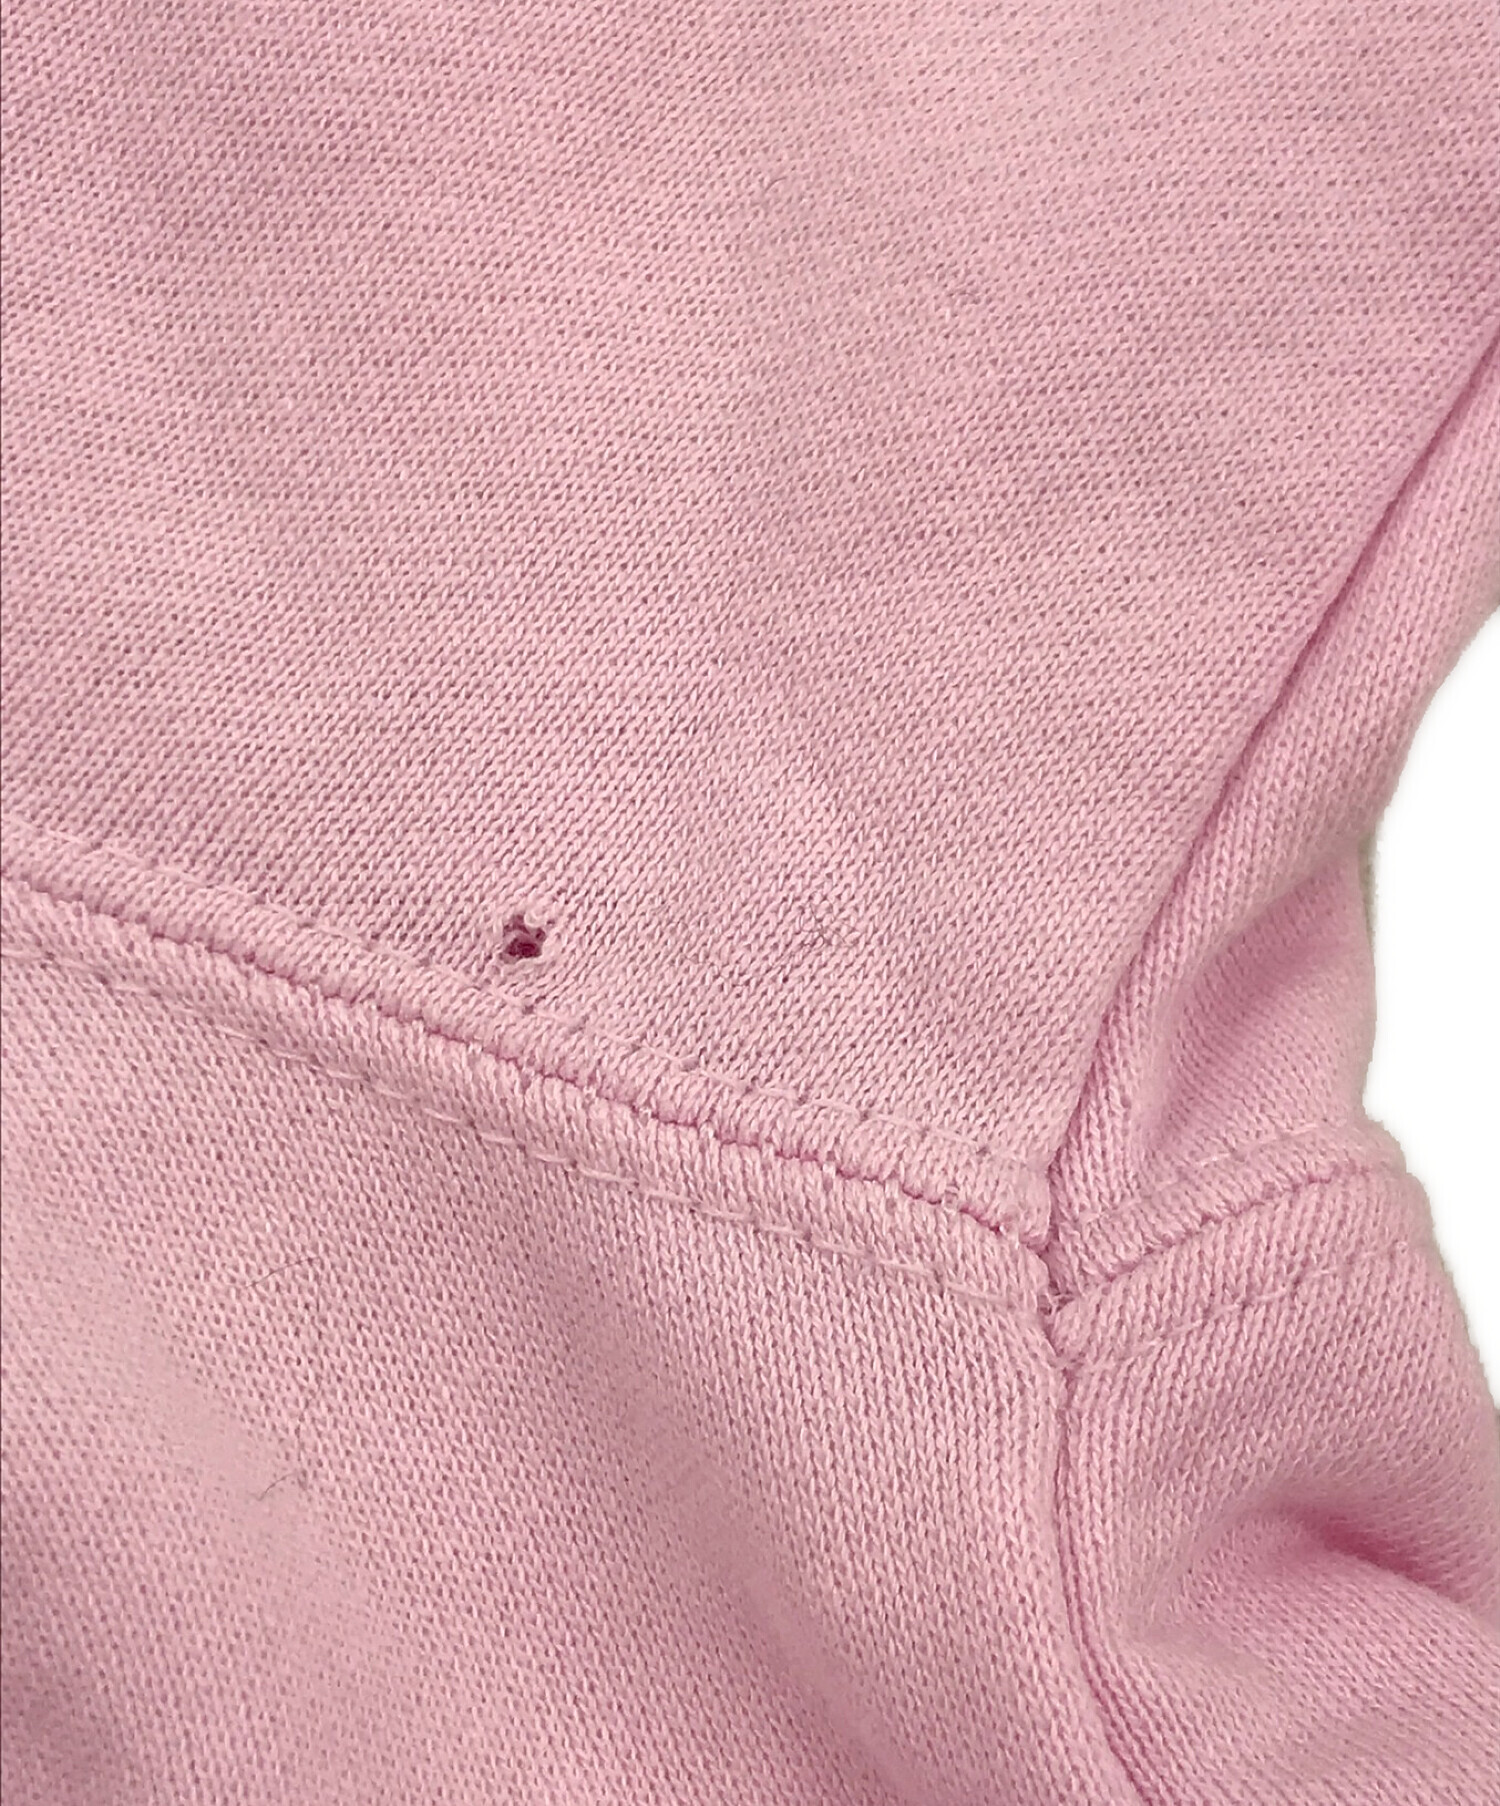 TRAVAS TOKYO (トラヴァストーキョー) 袖くまラウンドロゴパーカー ピンク サイズ:FREE